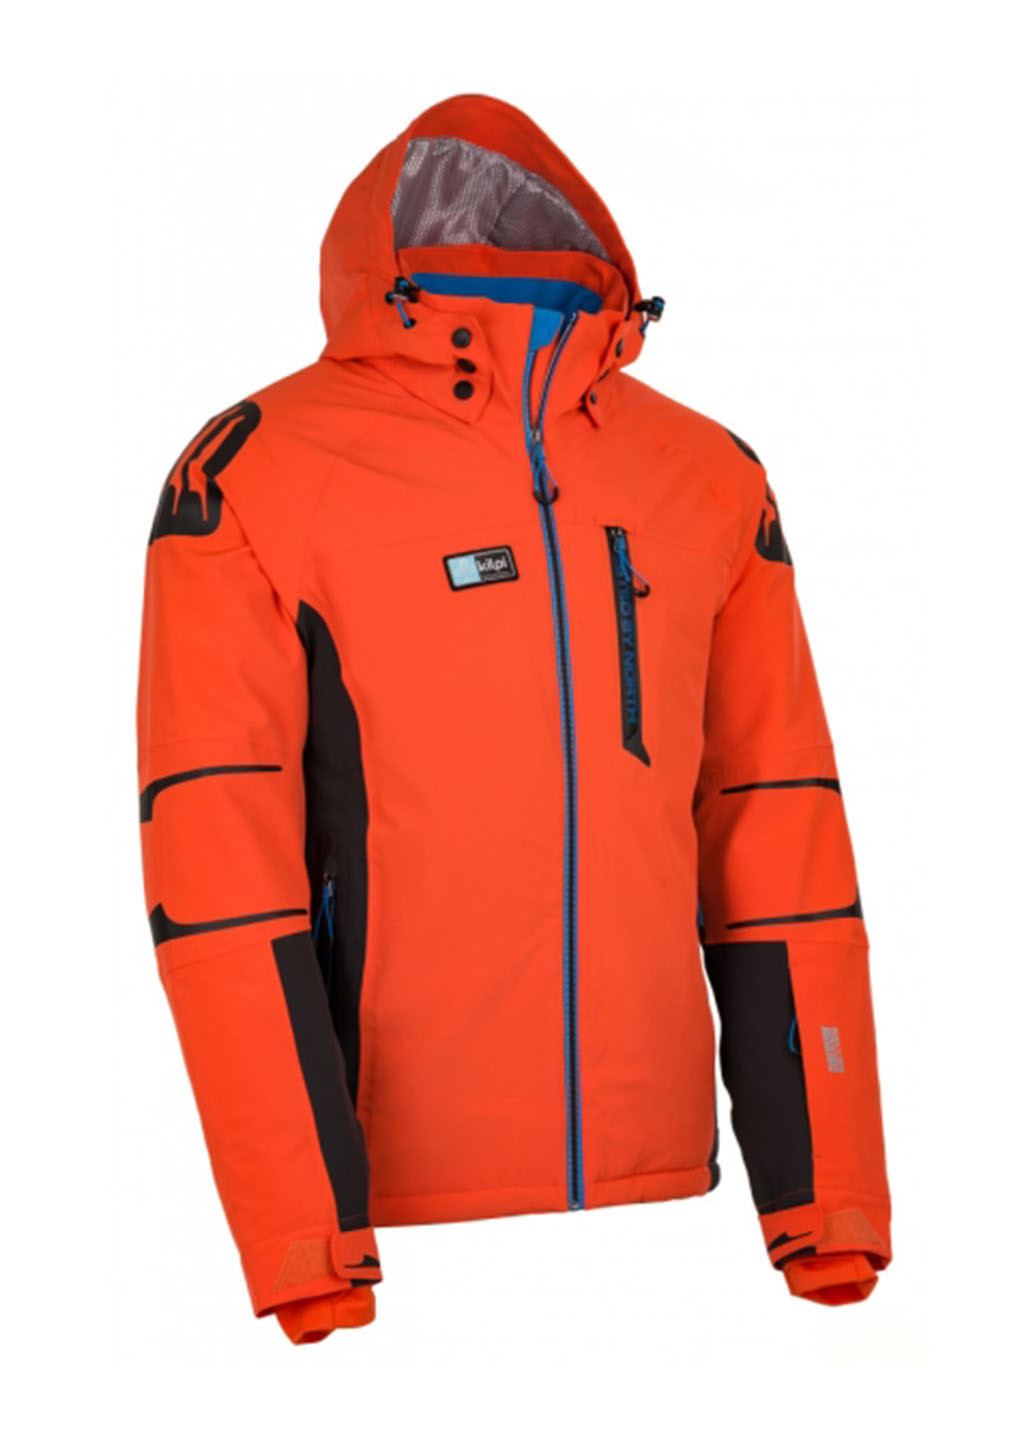 Оранжево-красная зимняя лыжная куртка Kilpi